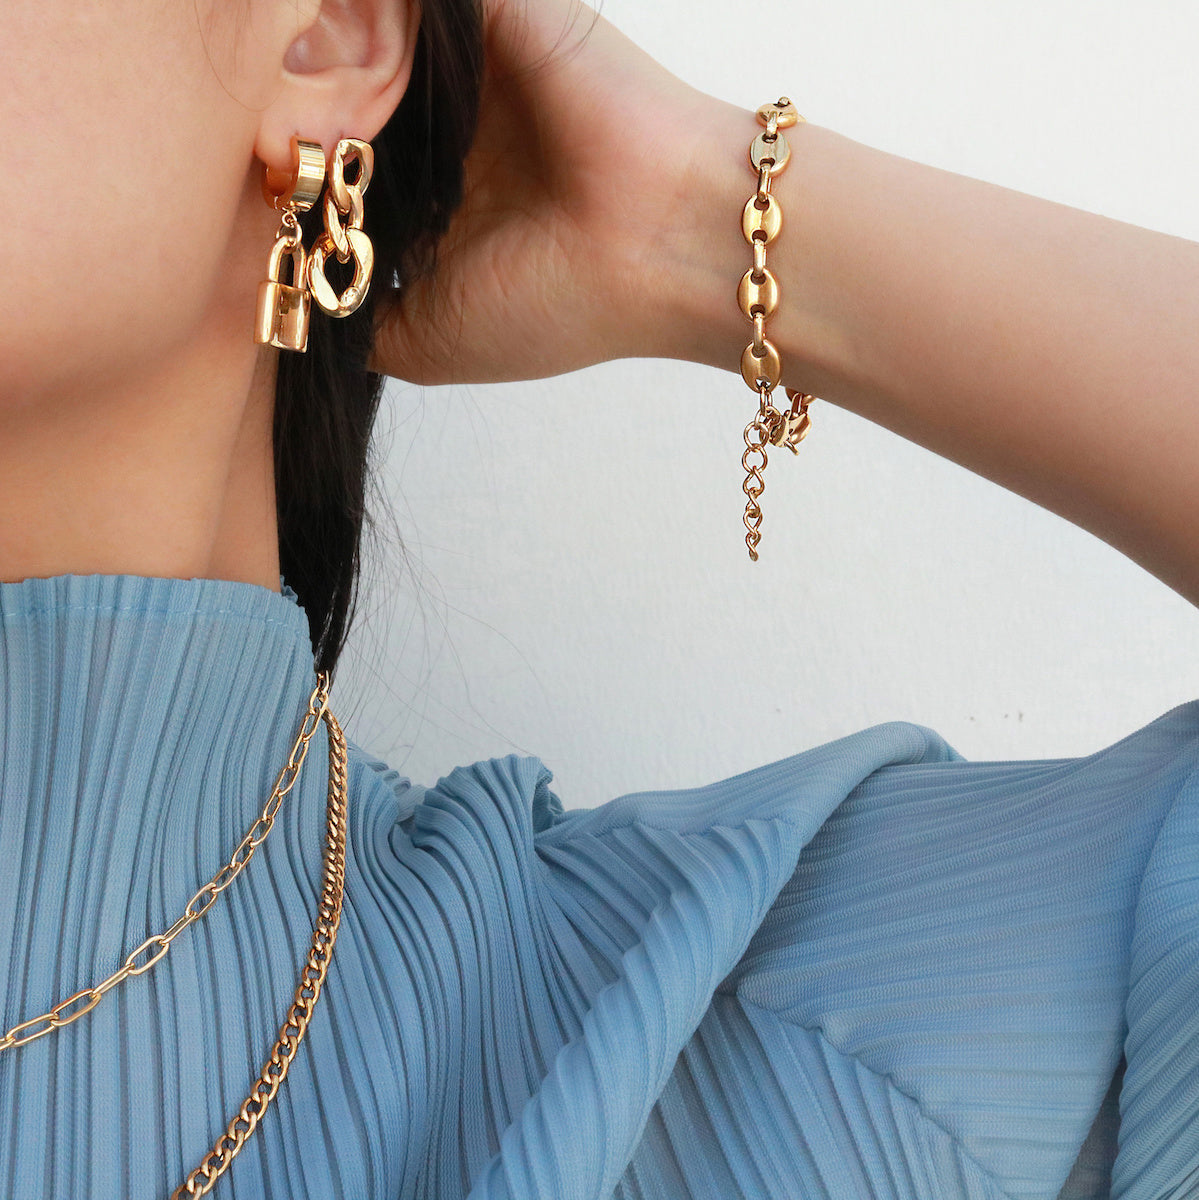 Meideya Jewelry - 18k gold Adele chain earrings